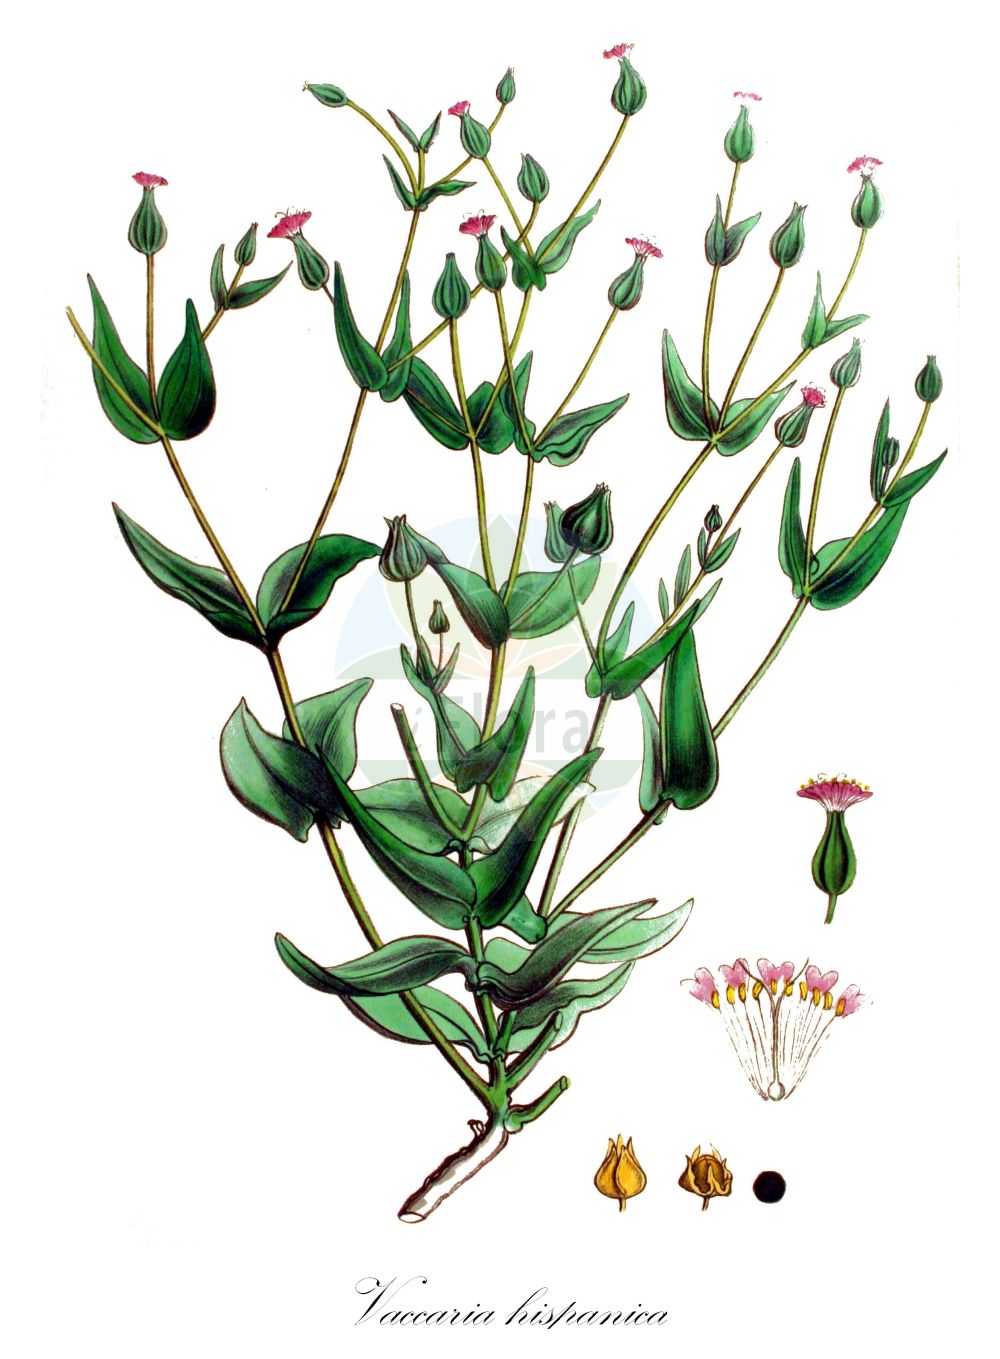 Historische Abbildung von Vaccaria hispanica (Kuhkraut - Cowherb). Das Bild zeigt Blatt, Bluete, Frucht und Same. ---- Historical Drawing of Vaccaria hispanica (Kuhkraut - Cowherb). The image is showing leaf, flower, fruit and seed.(Vaccaria hispanica,Kuhkraut,Cowherb,Gypsophila vaccaria,Saponaria hispanica,Saponaria vaccaria,Vaccaria brachycalyx,Vaccaria grandiflora,Vaccaria hispanica,Vaccaria parviflora,Vaccaria perfoliata,Vaccaria pyramidata,Vaccaria pyramidata Medik. var.,Vaccaria segetalis,Vaccaria vulgaris,Kuhkraut,Saat-Kuhnelke,Cowherb,Bladder Soapwort,Cow Basil,Cowcockle,Cow Soapwort,Vaccaria,Kuhnelke,Cowherb,Caryophyllaceae,Nelkengewächse,Pink family,Blatt,Bluete,Frucht,Same,leaf,flower,fruit,seed,Kops (1800-1934))